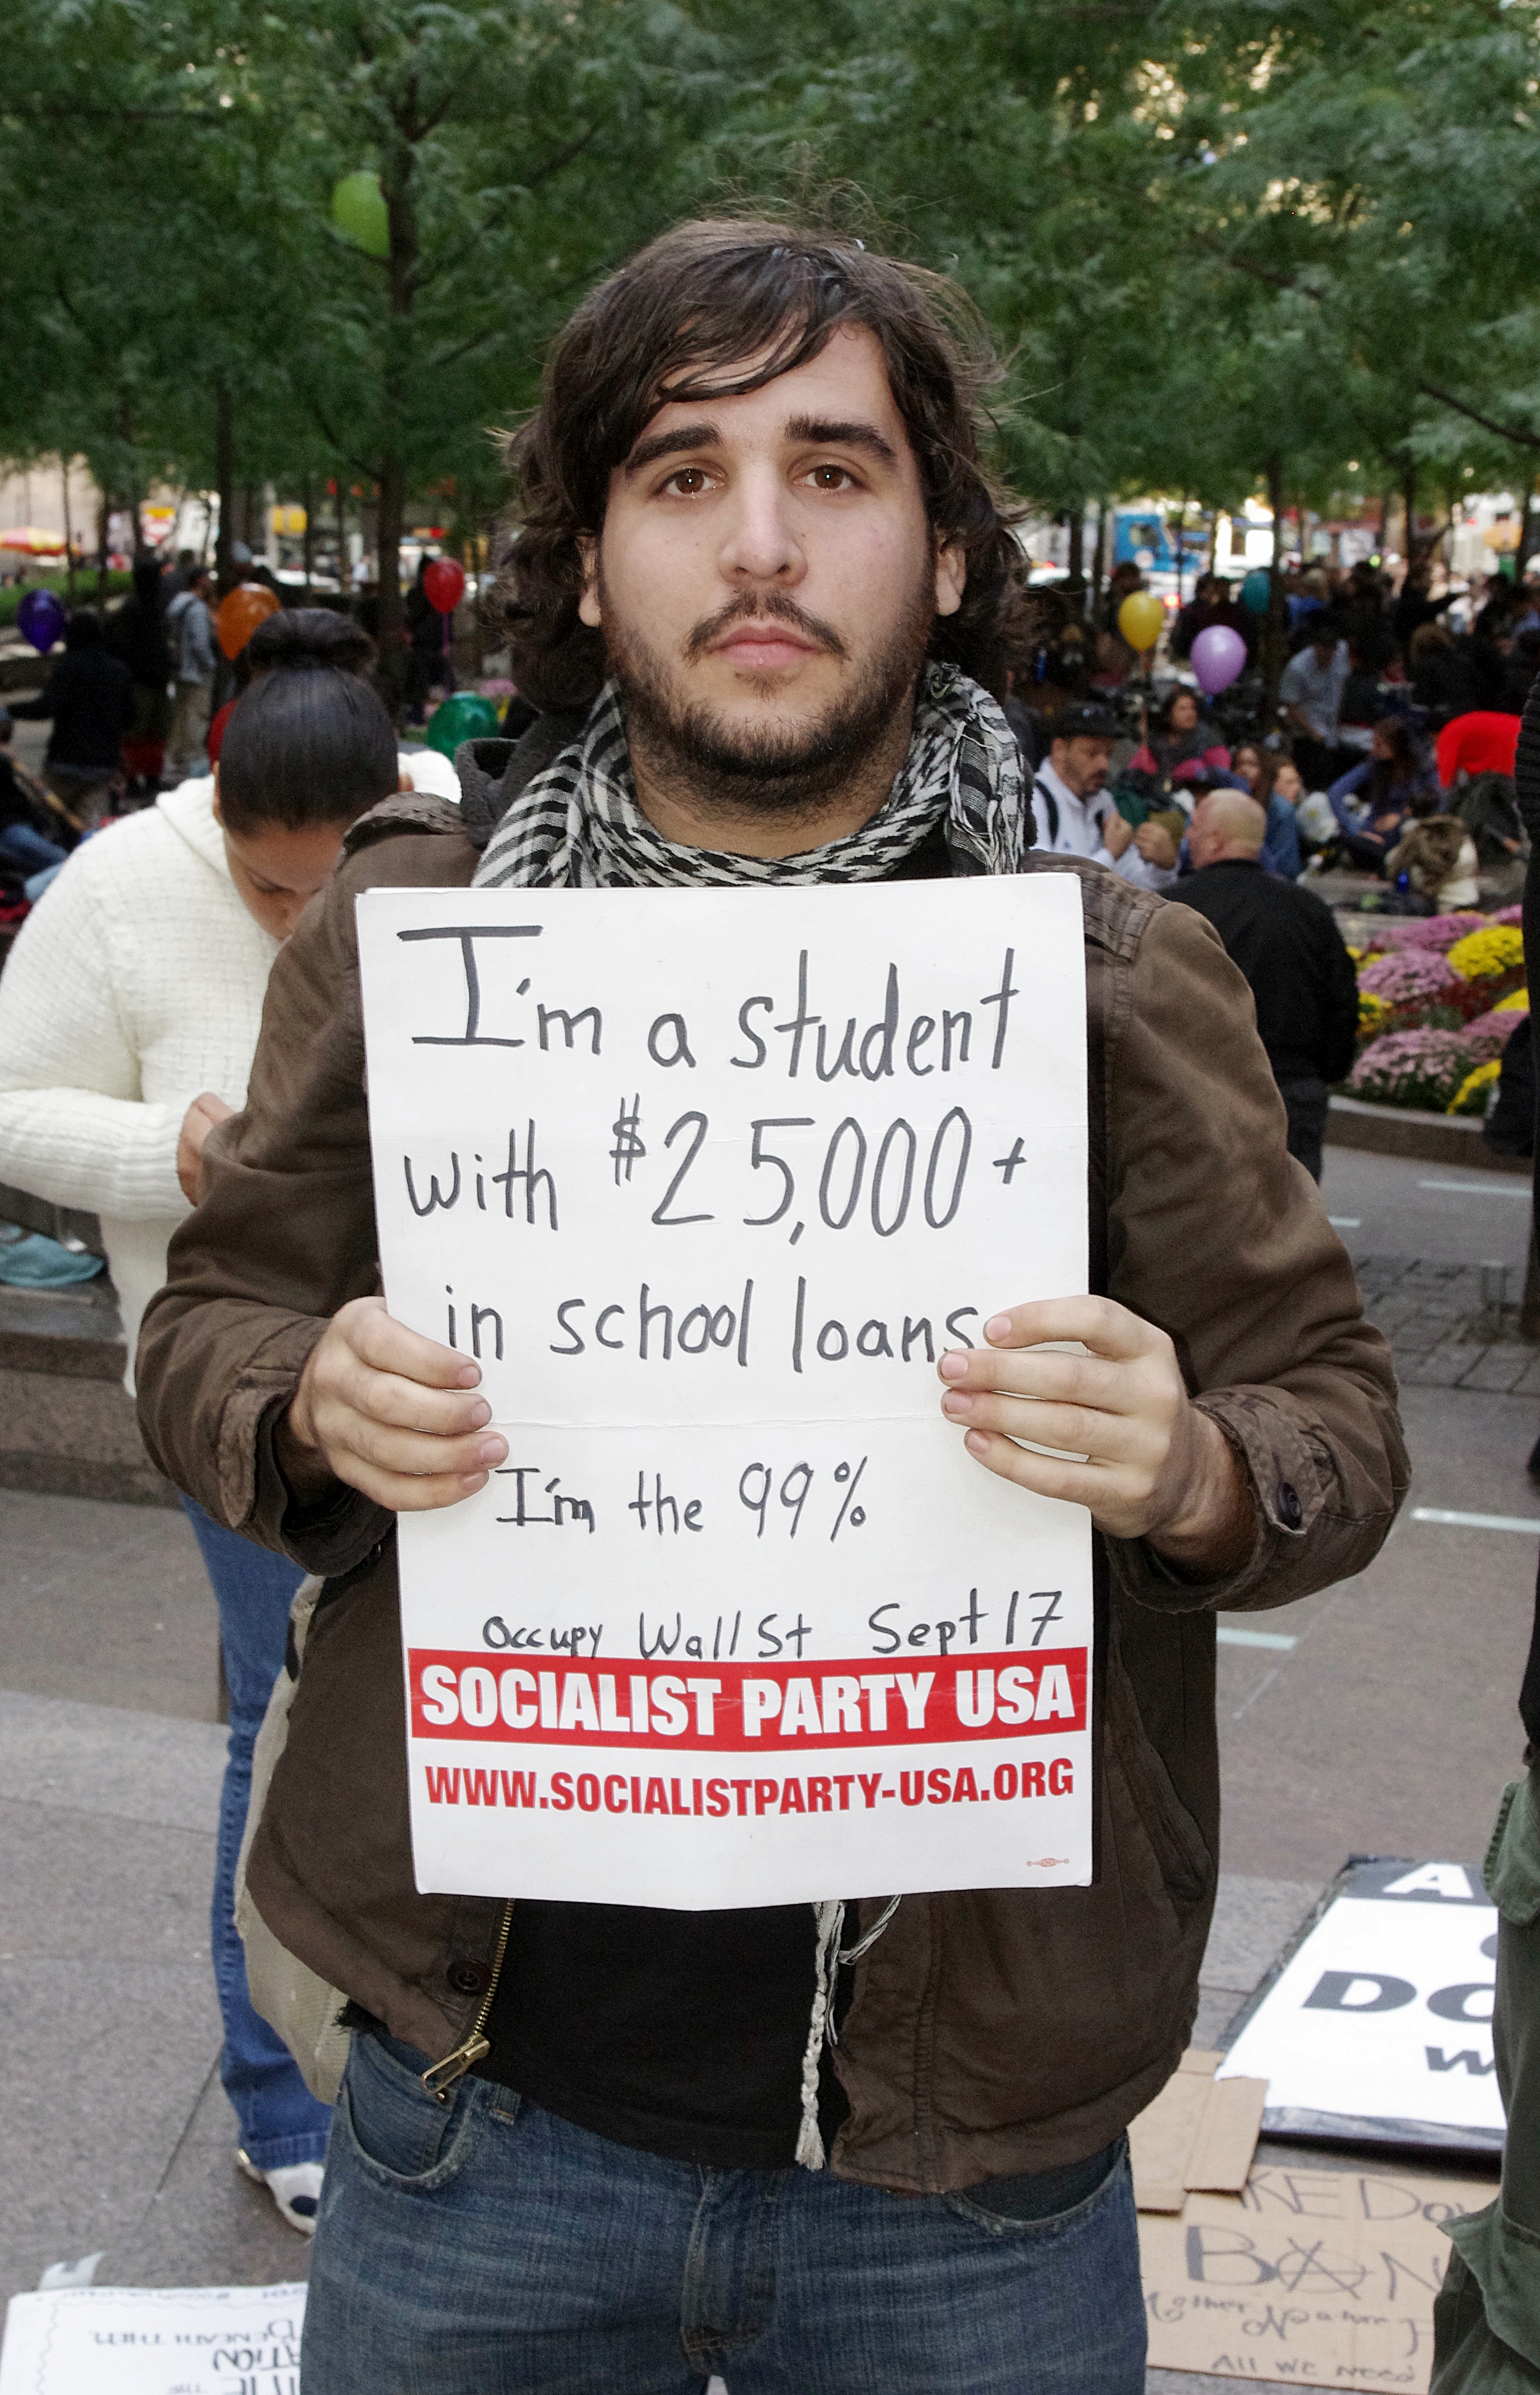 デモ参加者が掲げていた、米国の学生の負債状況。ウォール街占拠デモの3日目、マンハッタンのズコッティ公園にて。撮影：デビッド・シャンクボーン（CC BY 3.0）